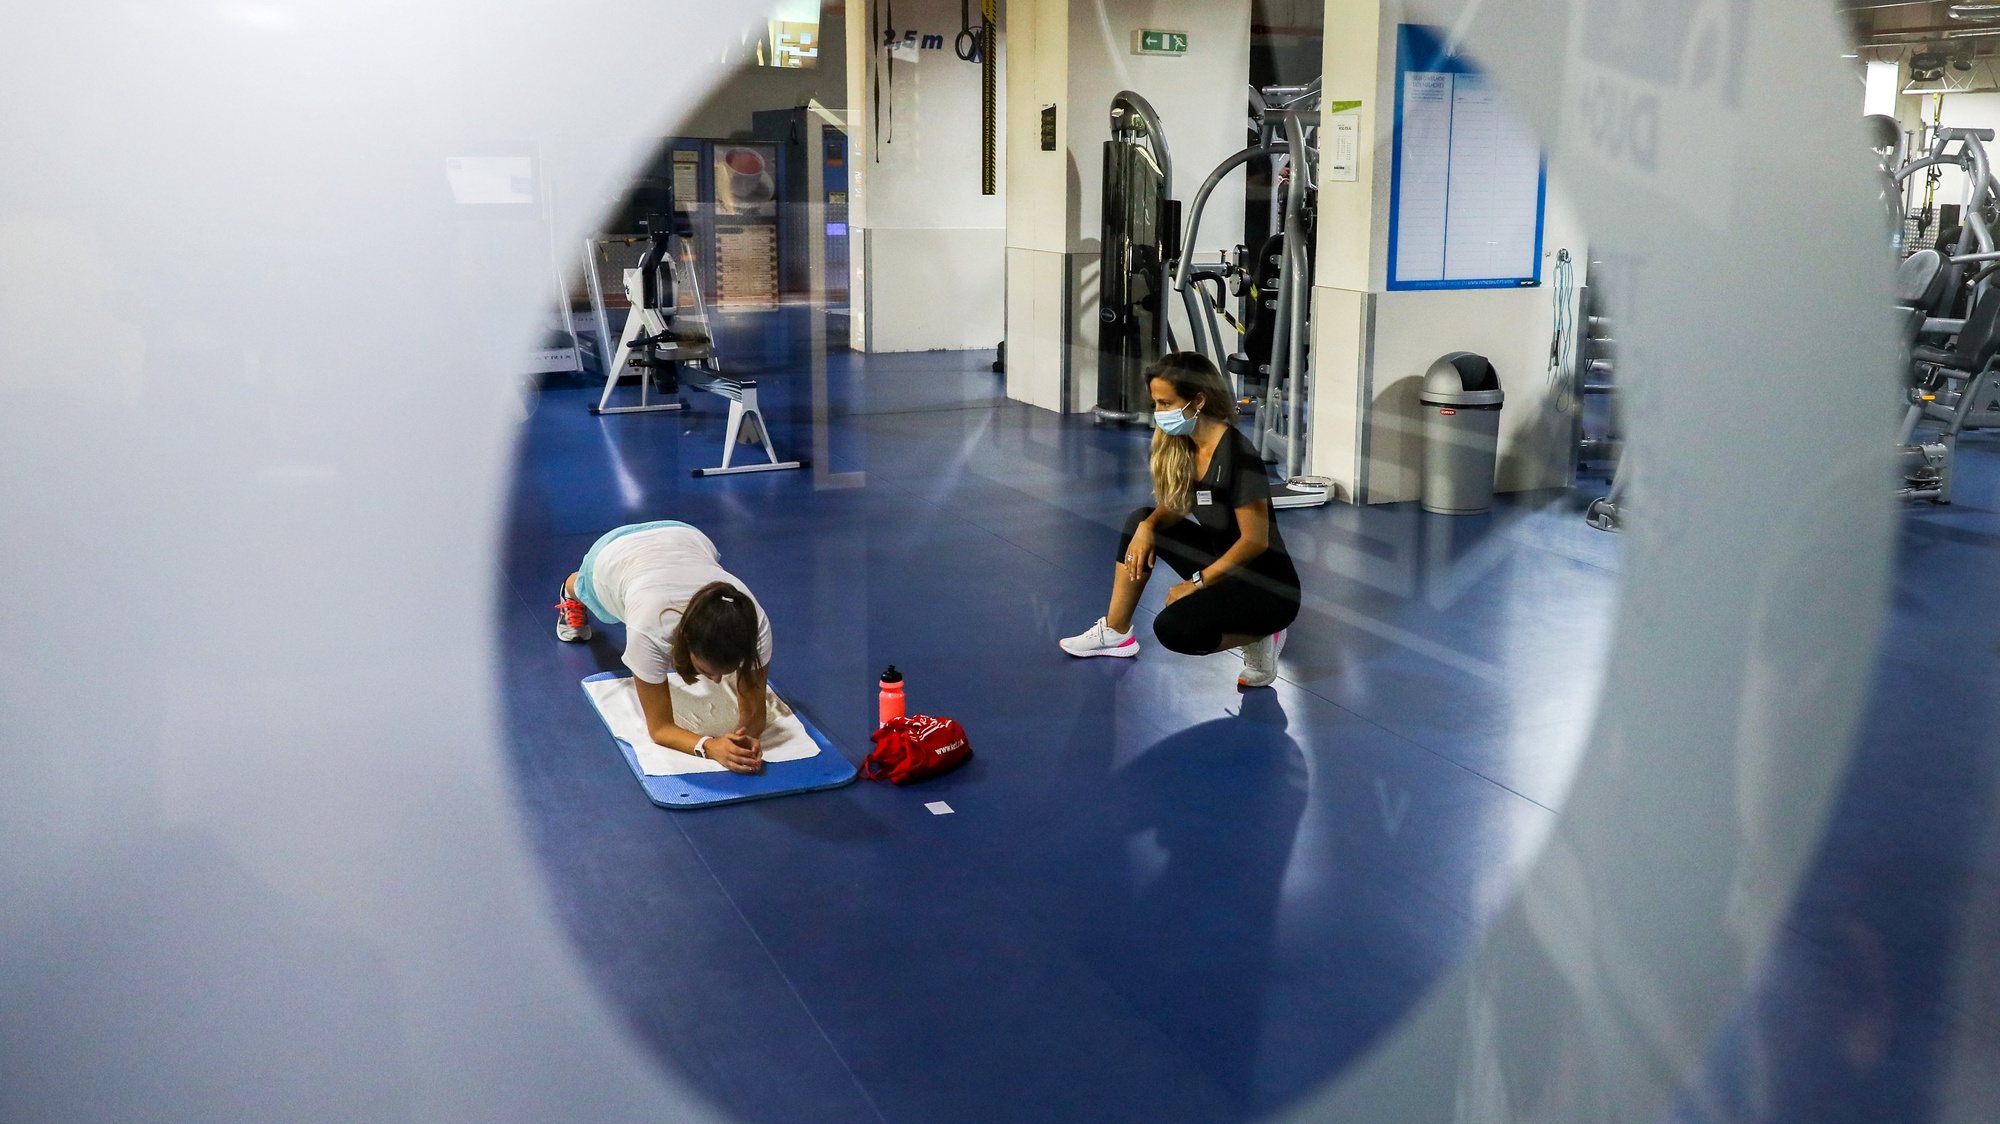 Uma utente treina esta manhã com a sua instrutora num ginásio em Lisboa, 03 de junho de 2020. Os ginásios puderam reabrir as suas portas ao público desde dia 1 de junho. MIGUEL A. LOPES/LUSA